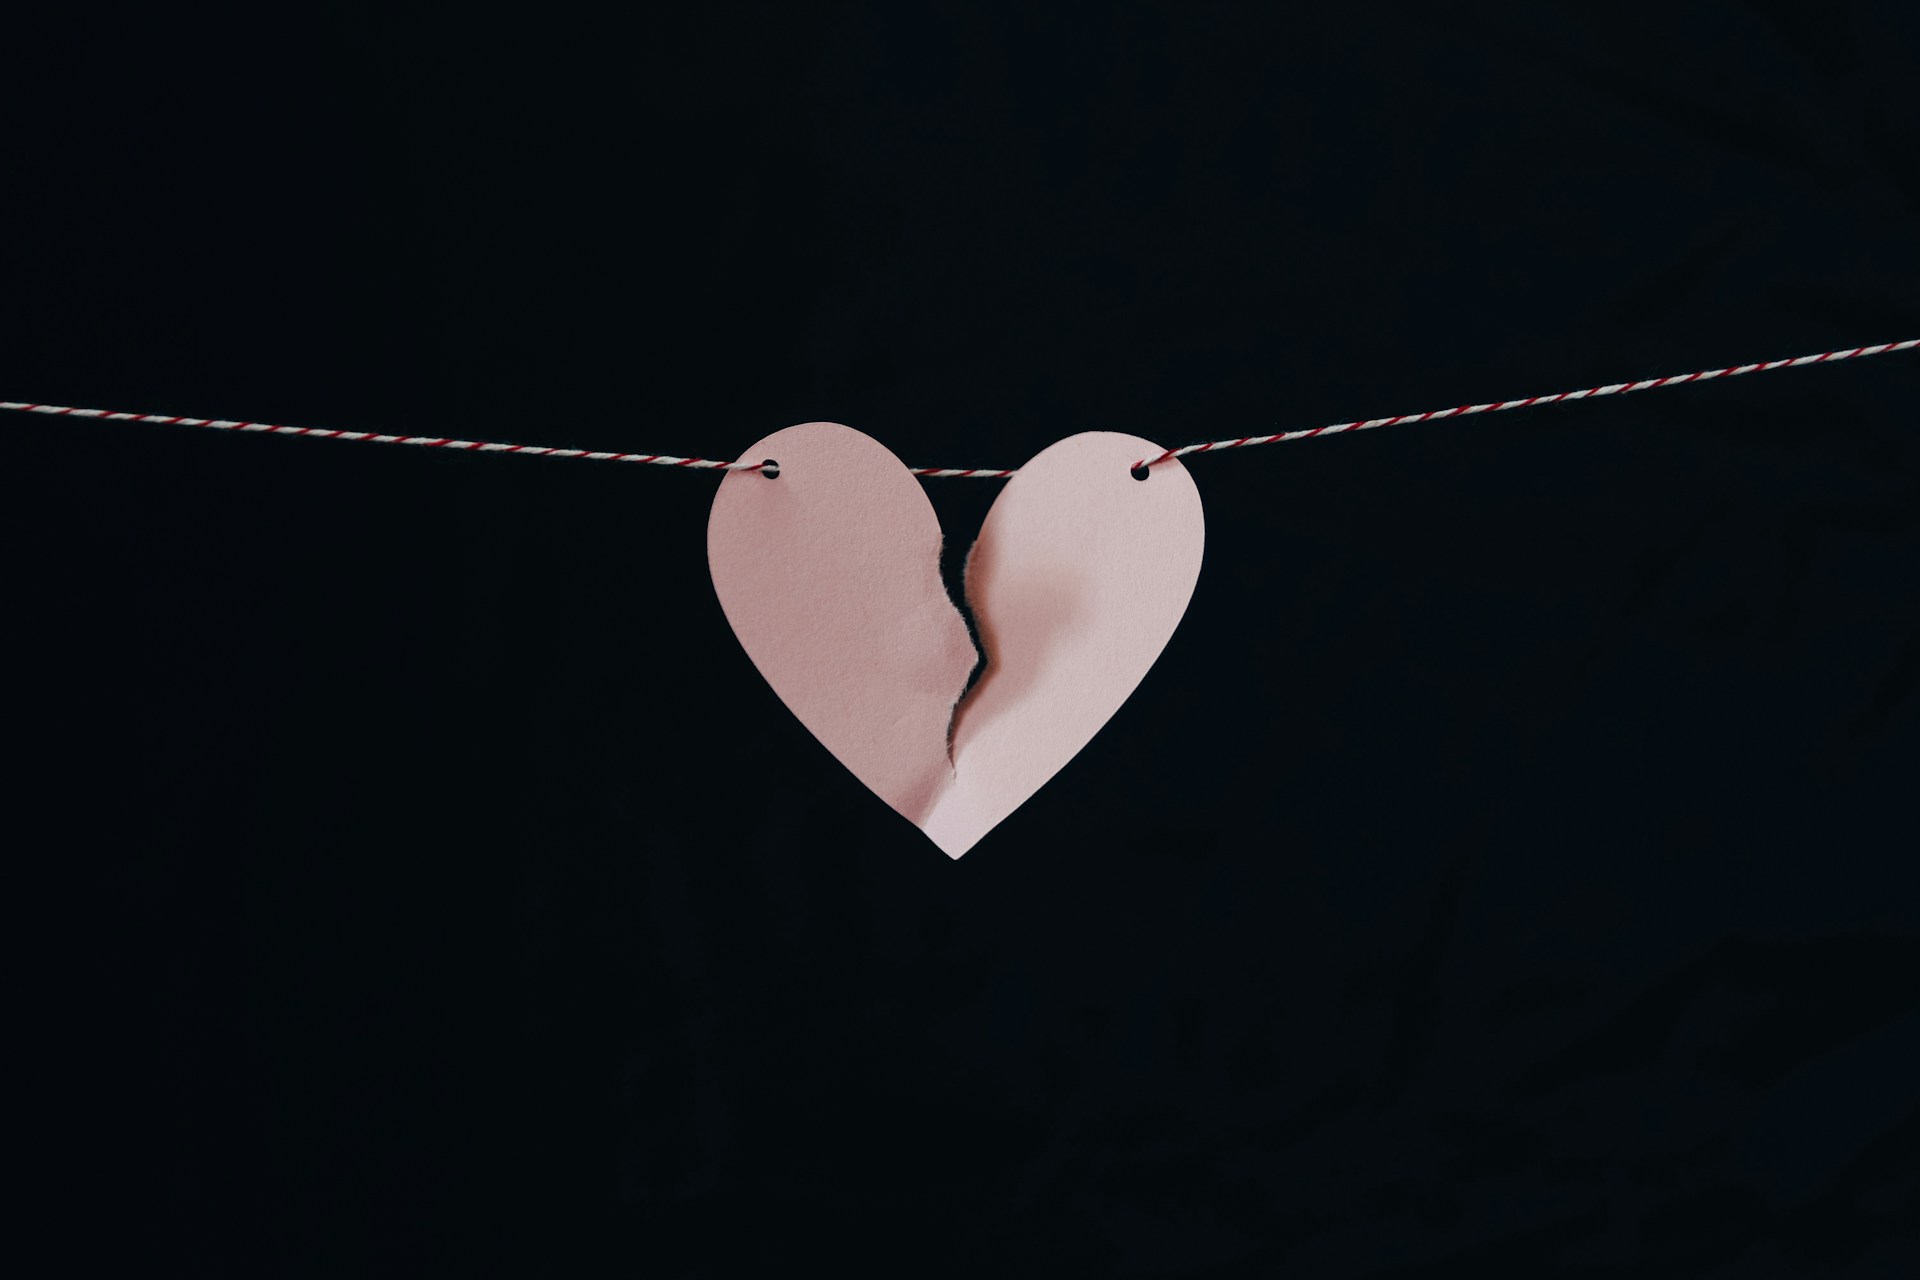 Estudo revela que estímulo elétrico pode ajudar a combater síndrome do trauma amoroso